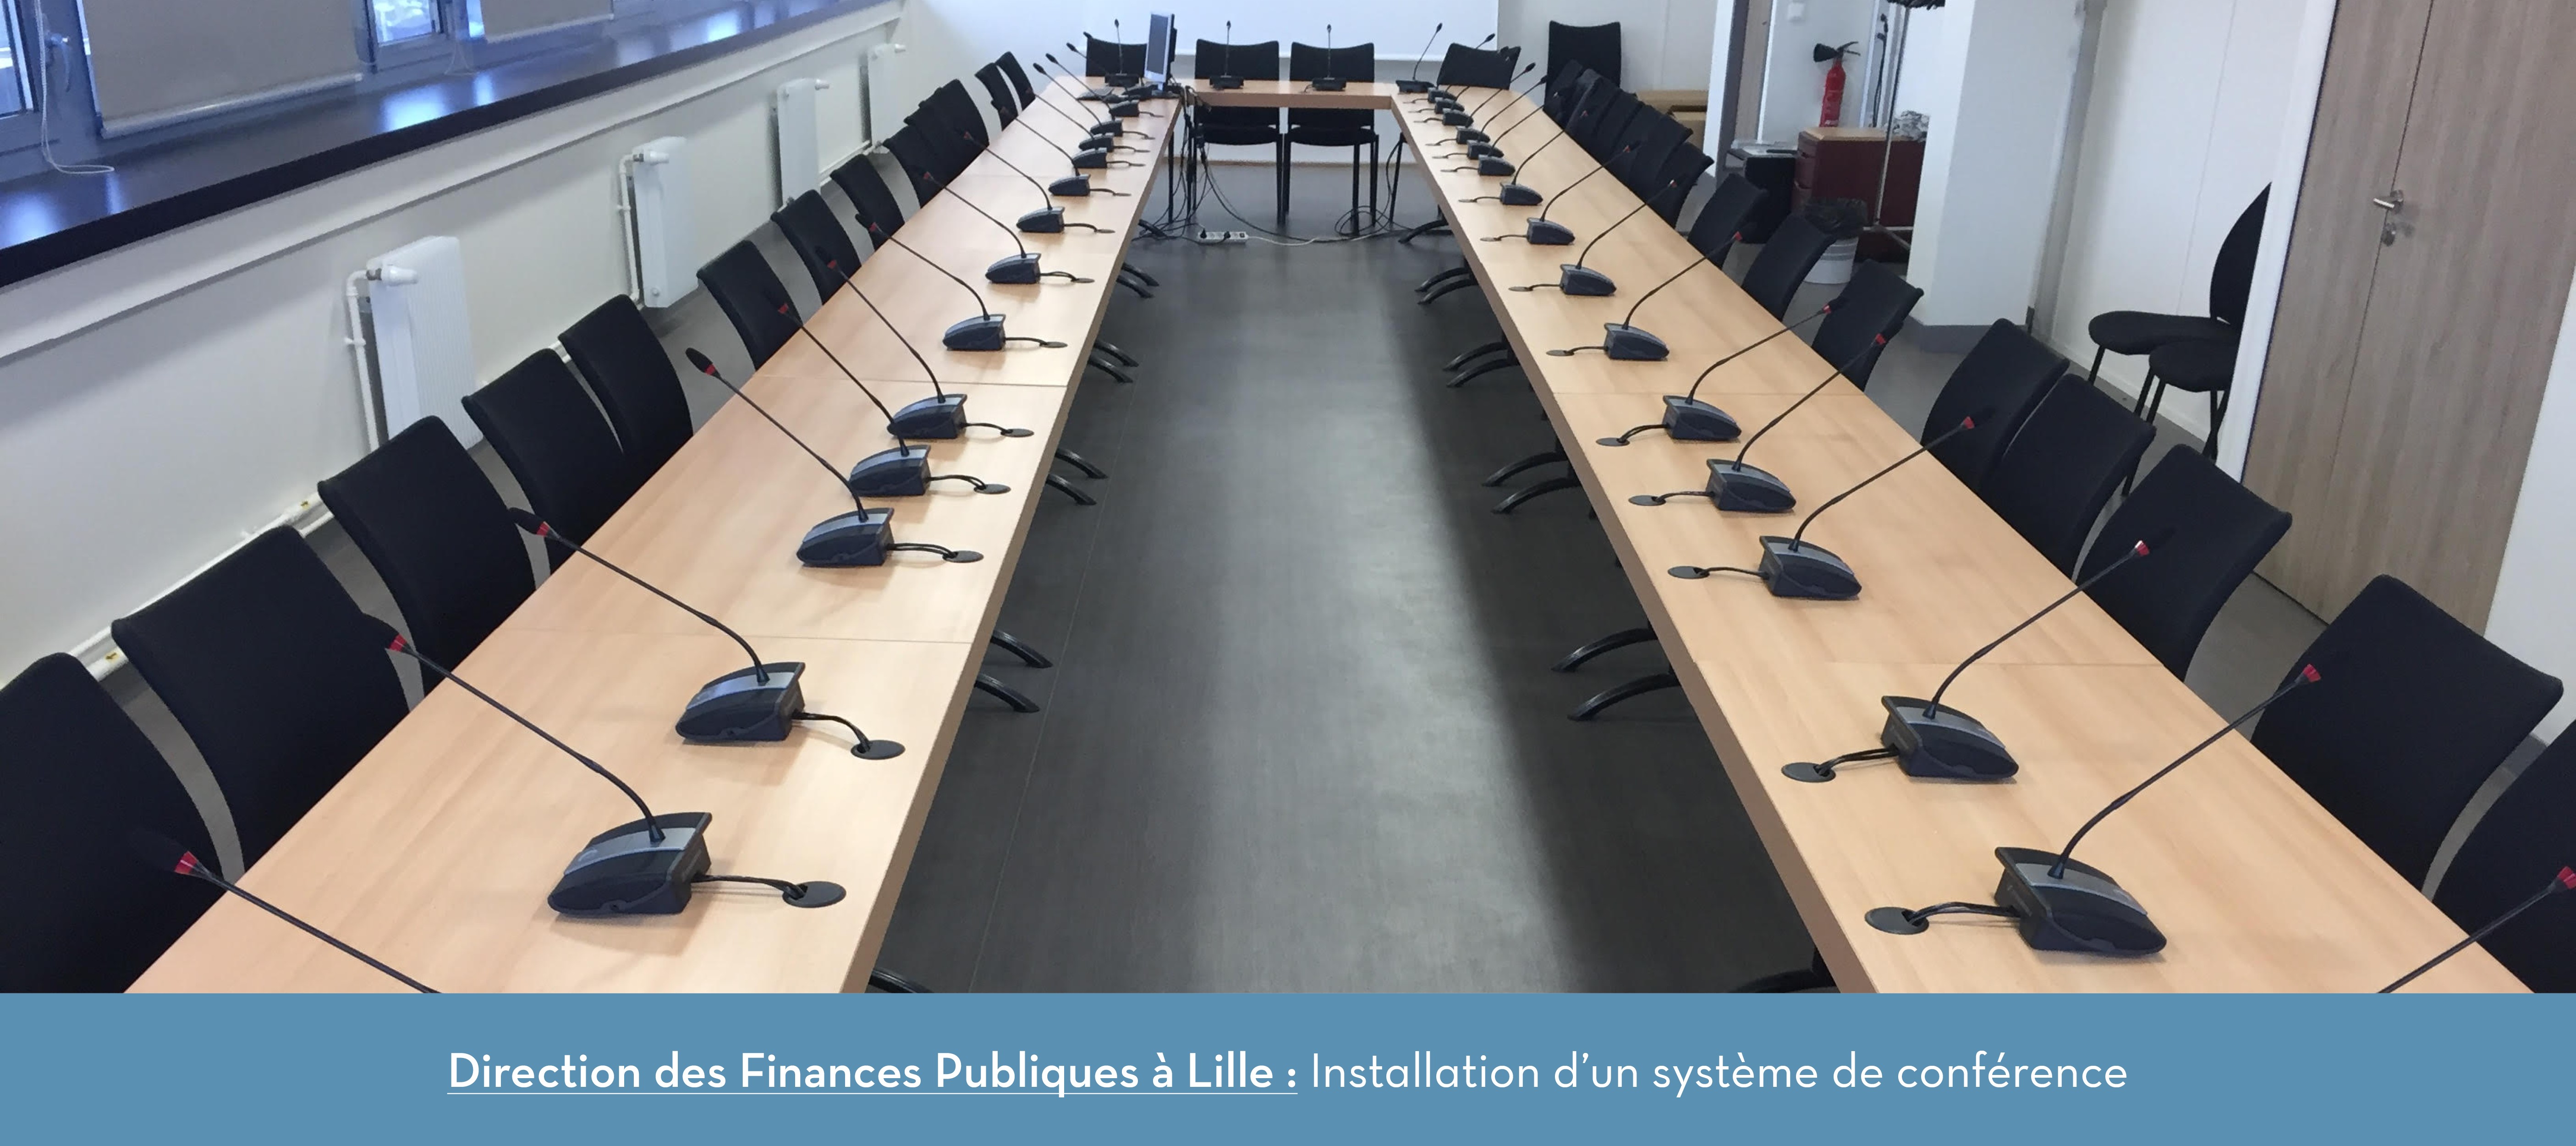 Direction des finances publiques à Lille